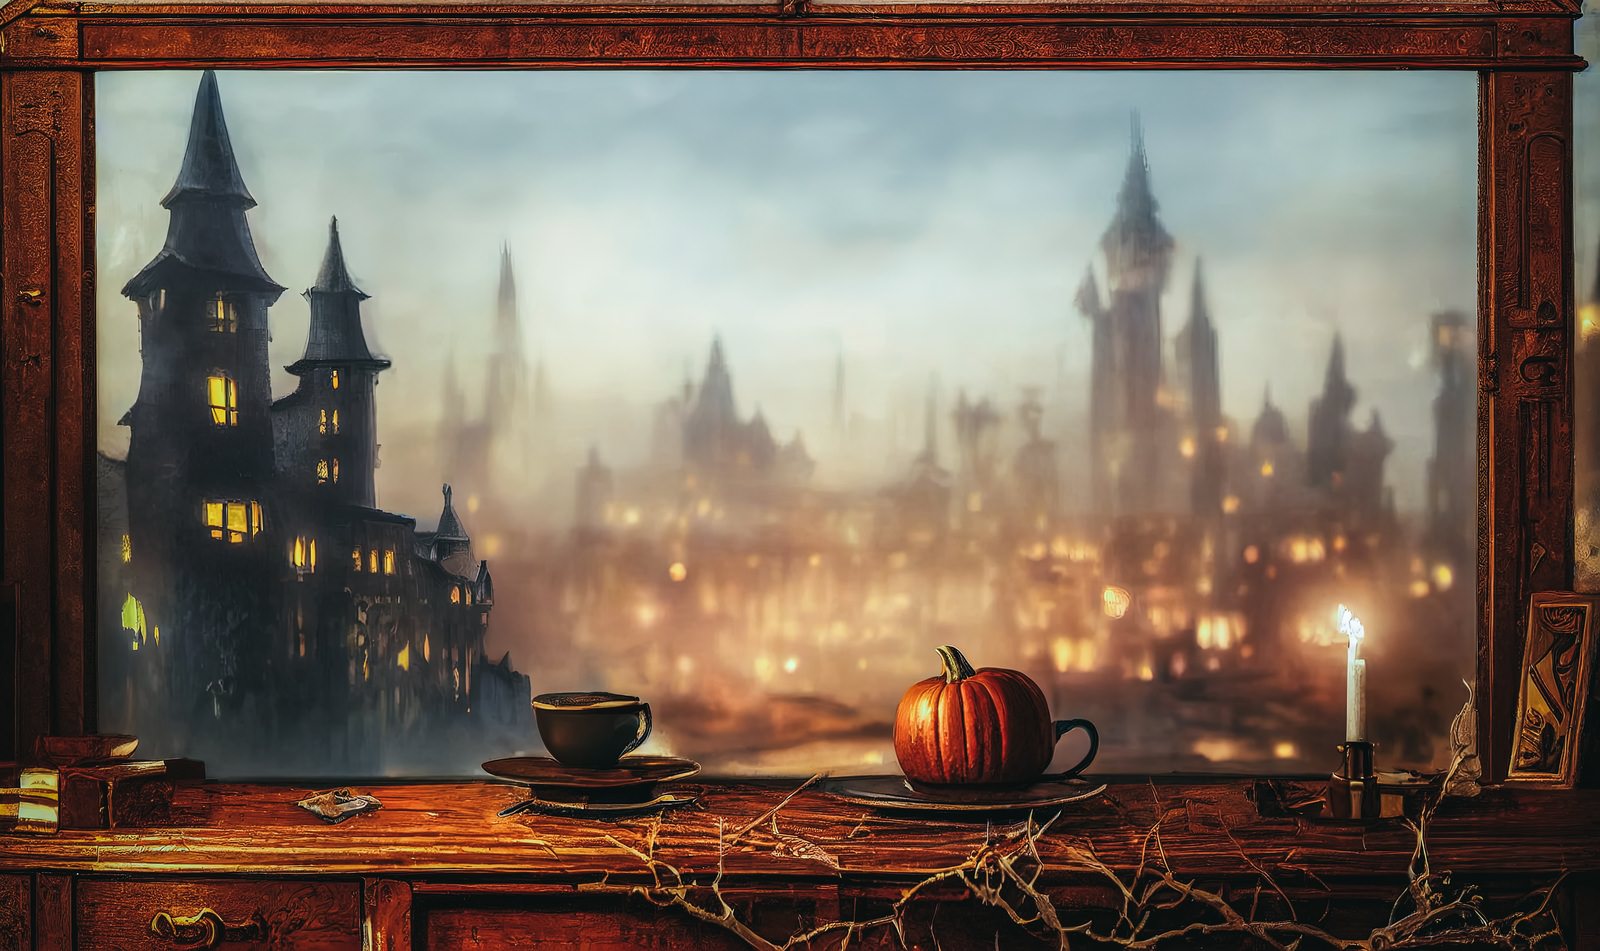 「古城の灯りと窓際のかぼちゃ」の写真